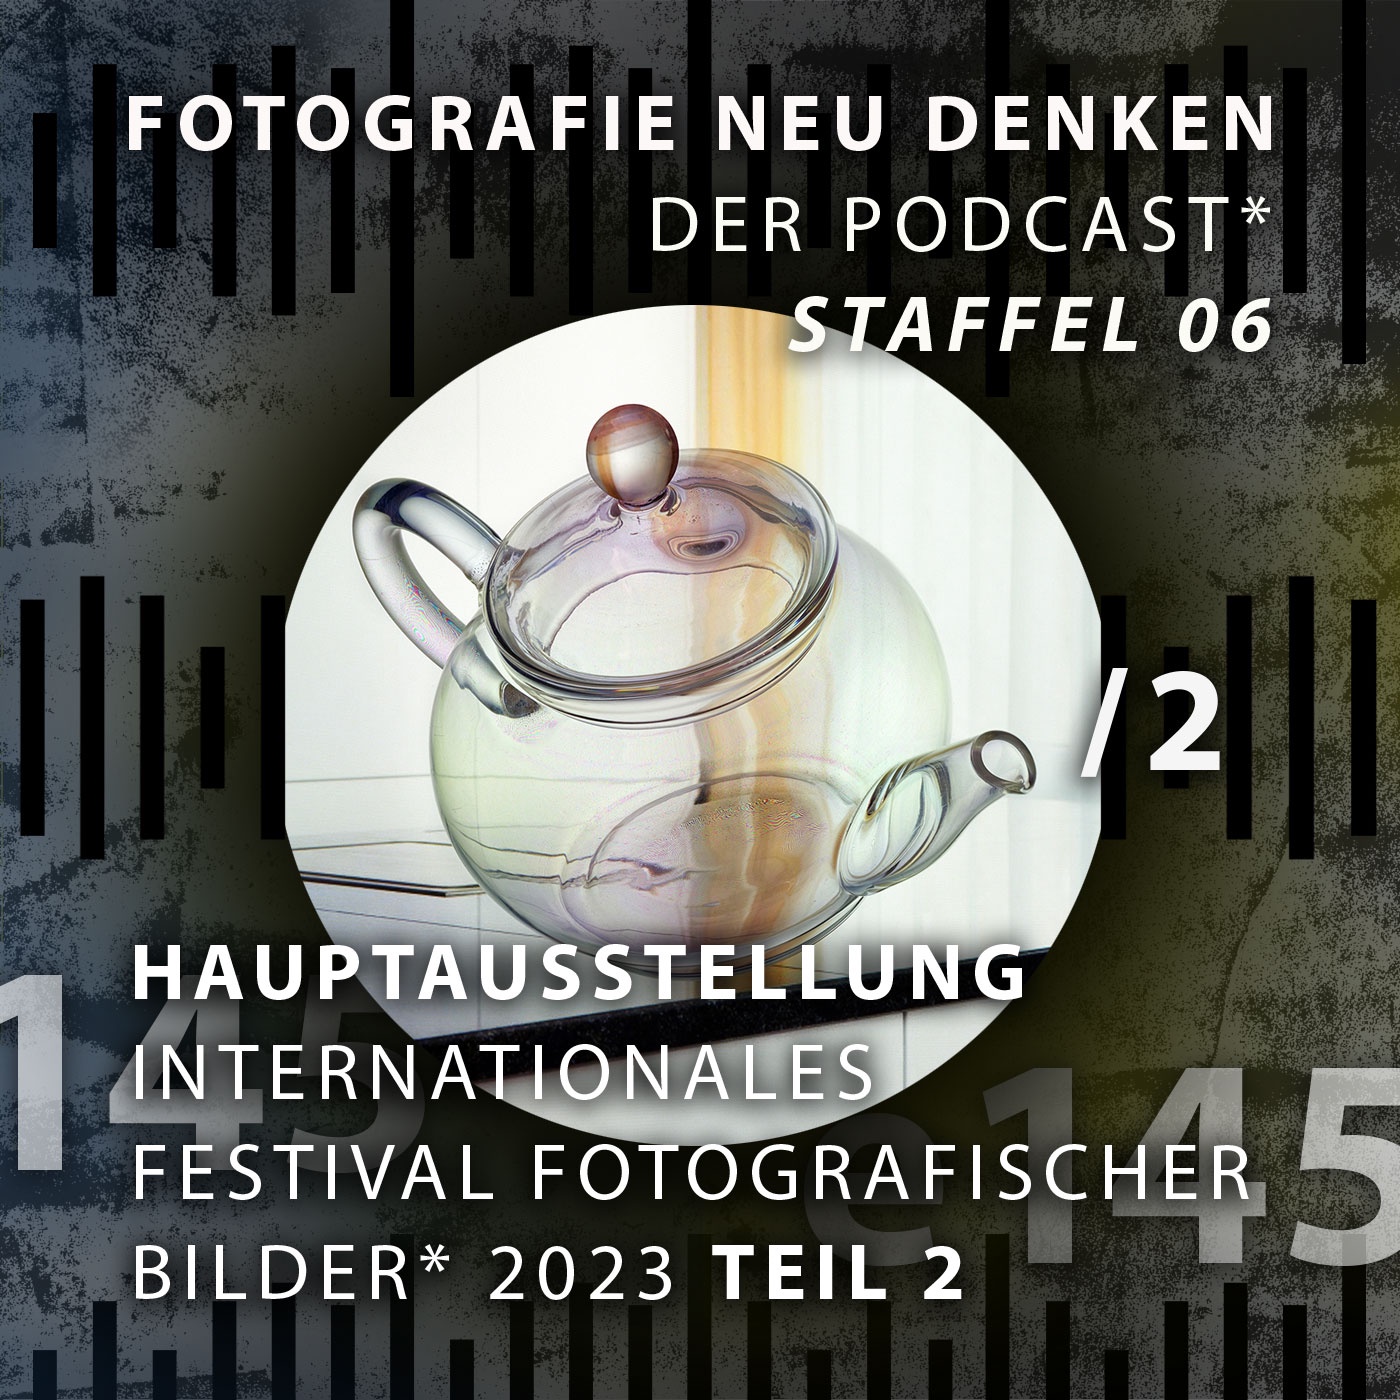 e145 »Hauptausstellung INTERNATIONALES FESTIVAL FOTOGRAFISCHER BILDER 2023 Teil 2.«